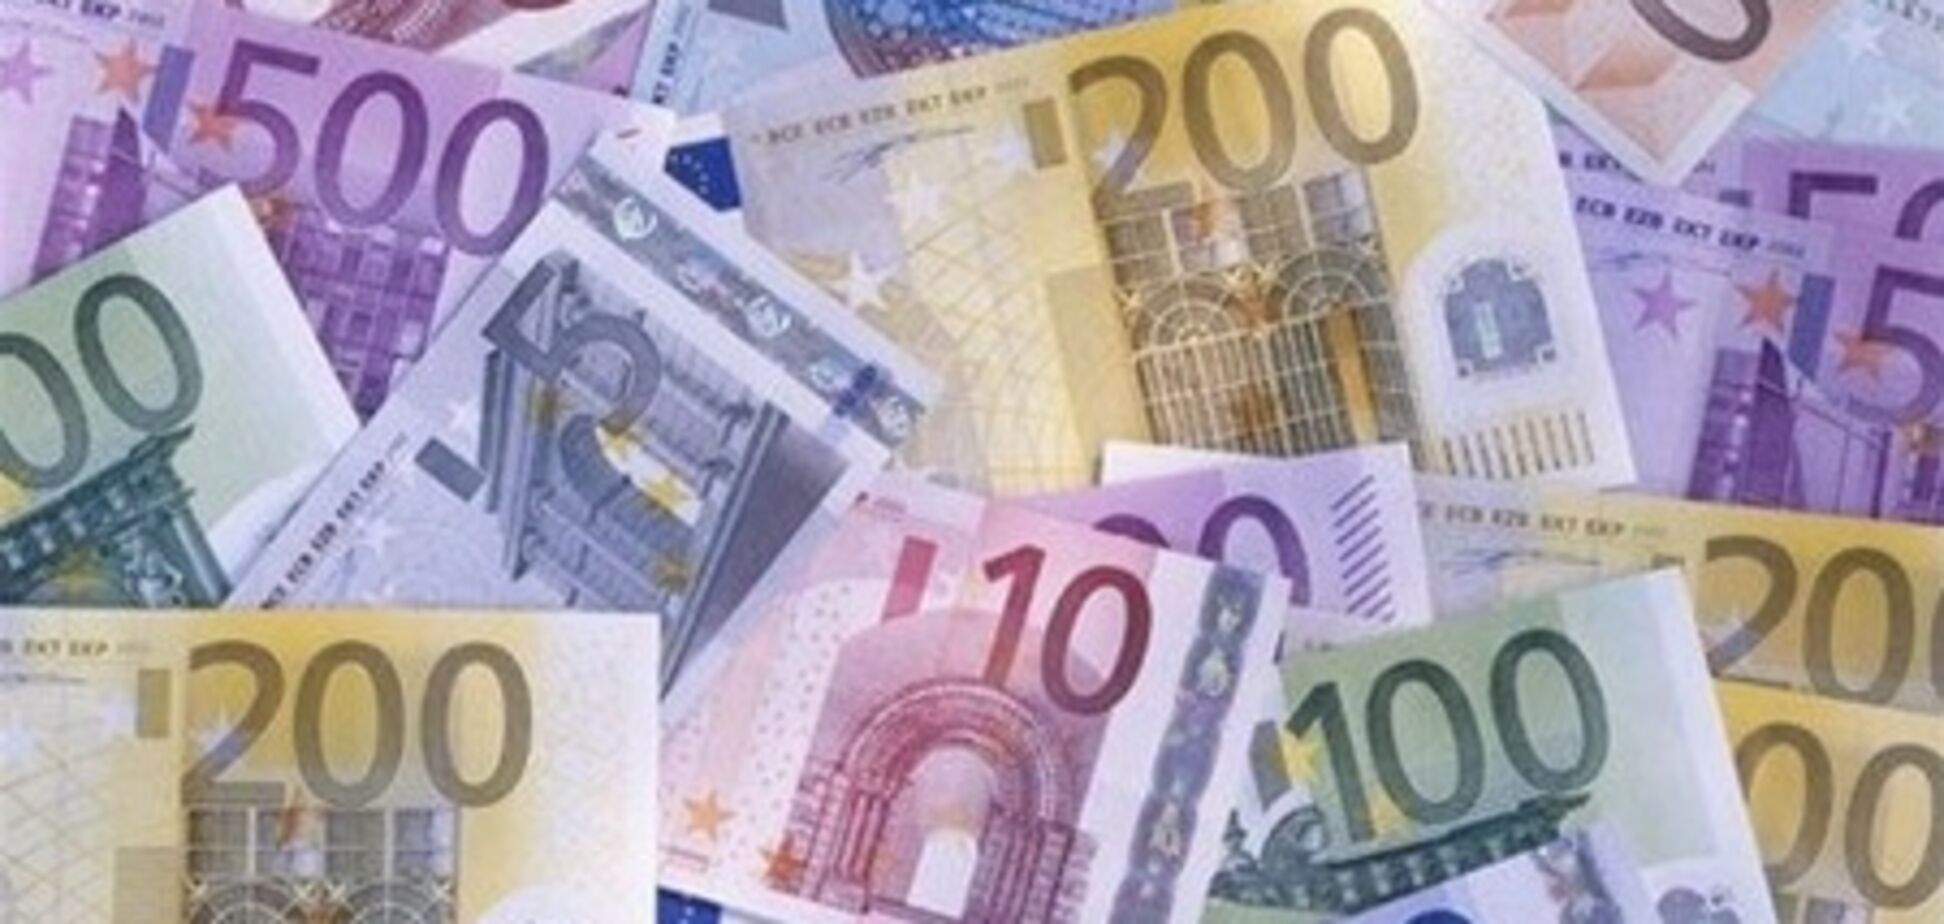 Наличный евро подорожал на 6 копеек